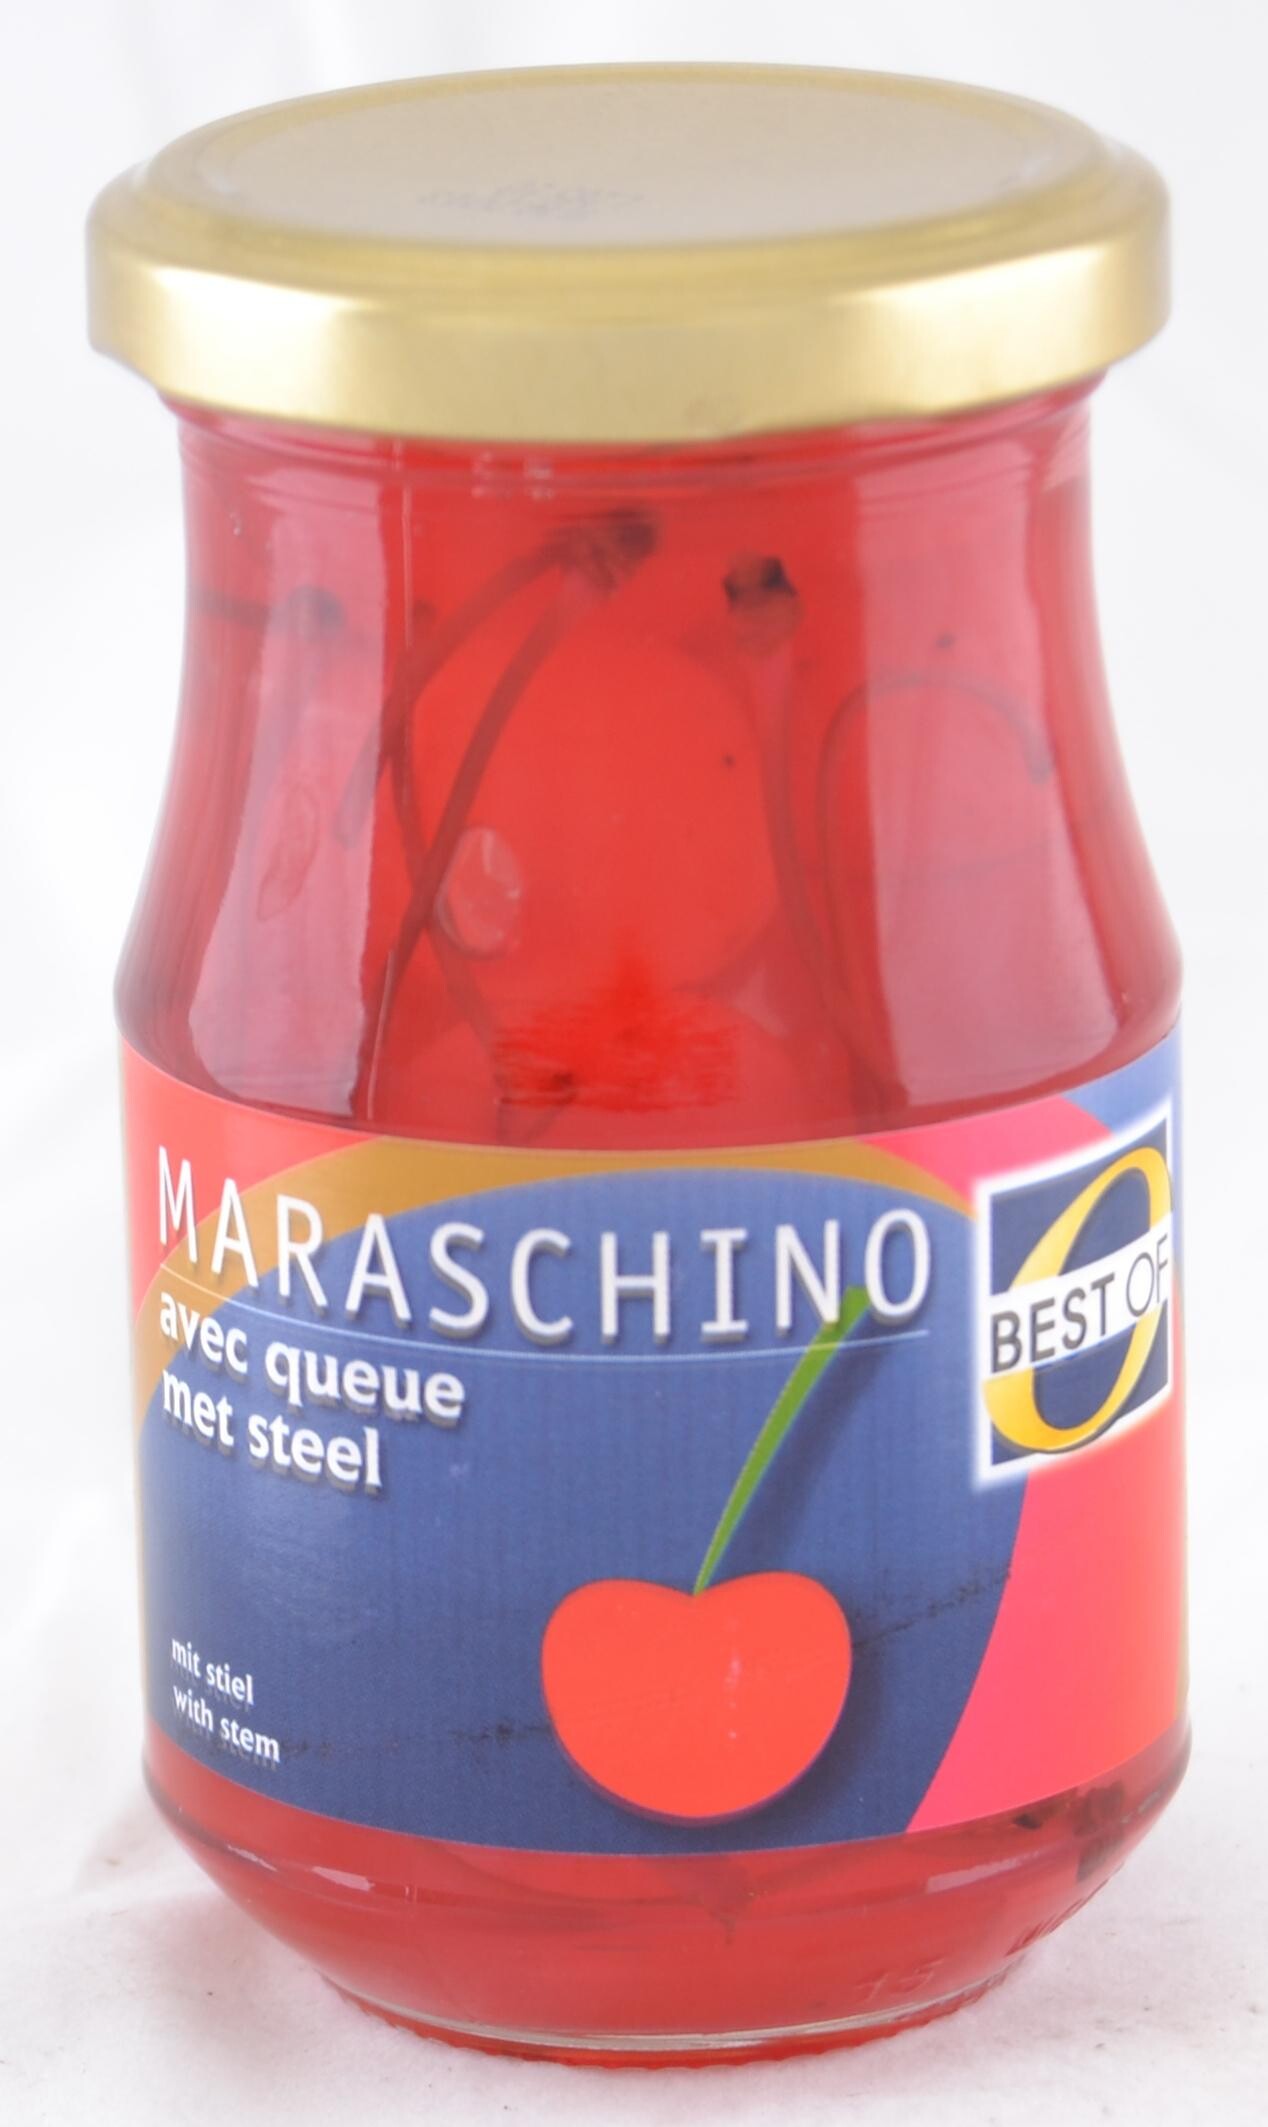 Avila Maraschino Cherries with stem 212ml